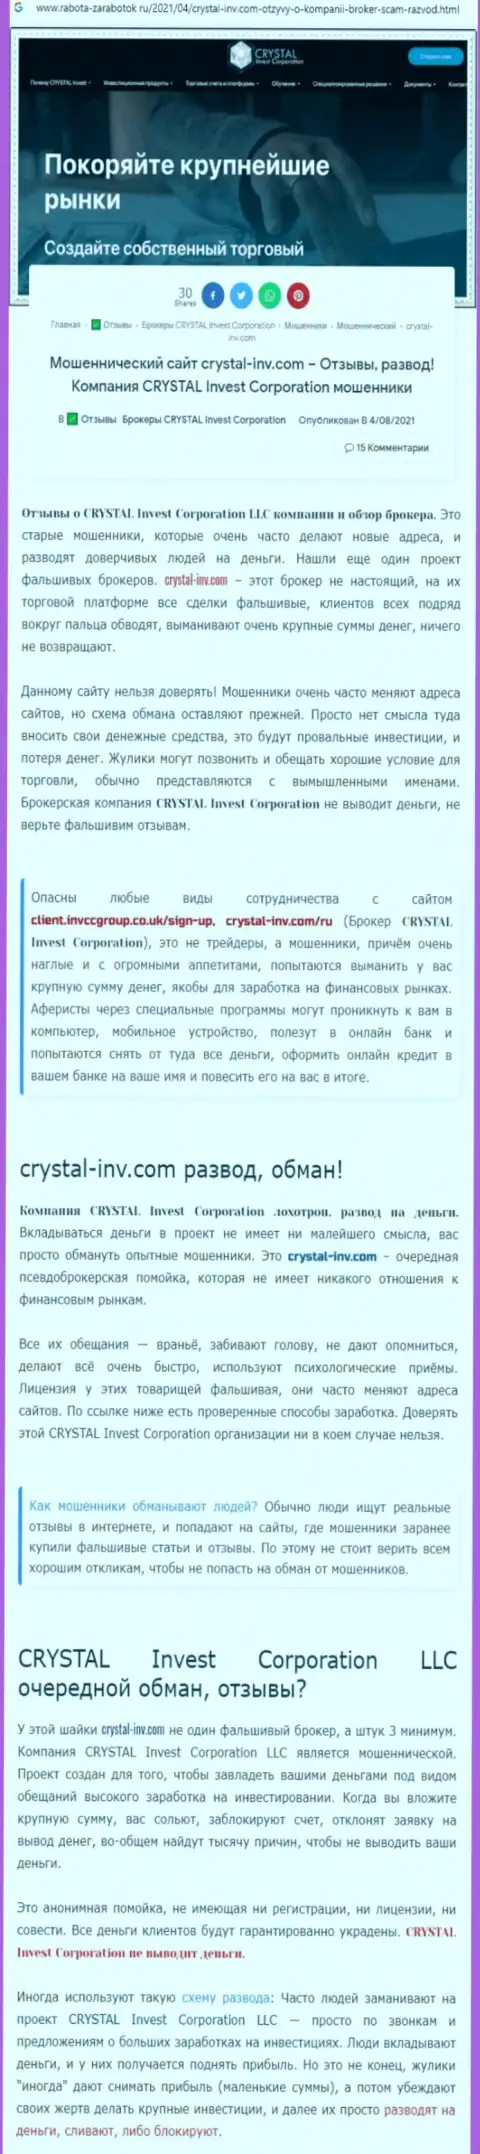 Материал, разоблачающий организацию Crystal Inv, взятый с портала с обзорами мошеннических деяний разных компаний